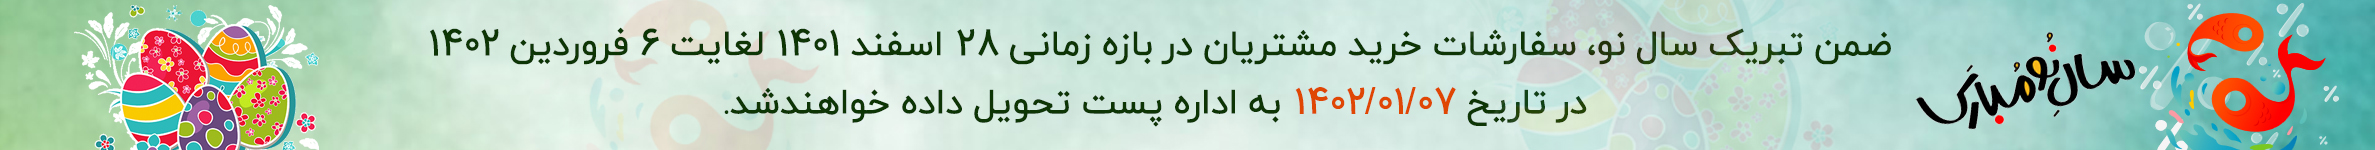 نیازکو نماد اصیل کفش چرم تبریز | فروشگاه تخصصی کفش و کیف